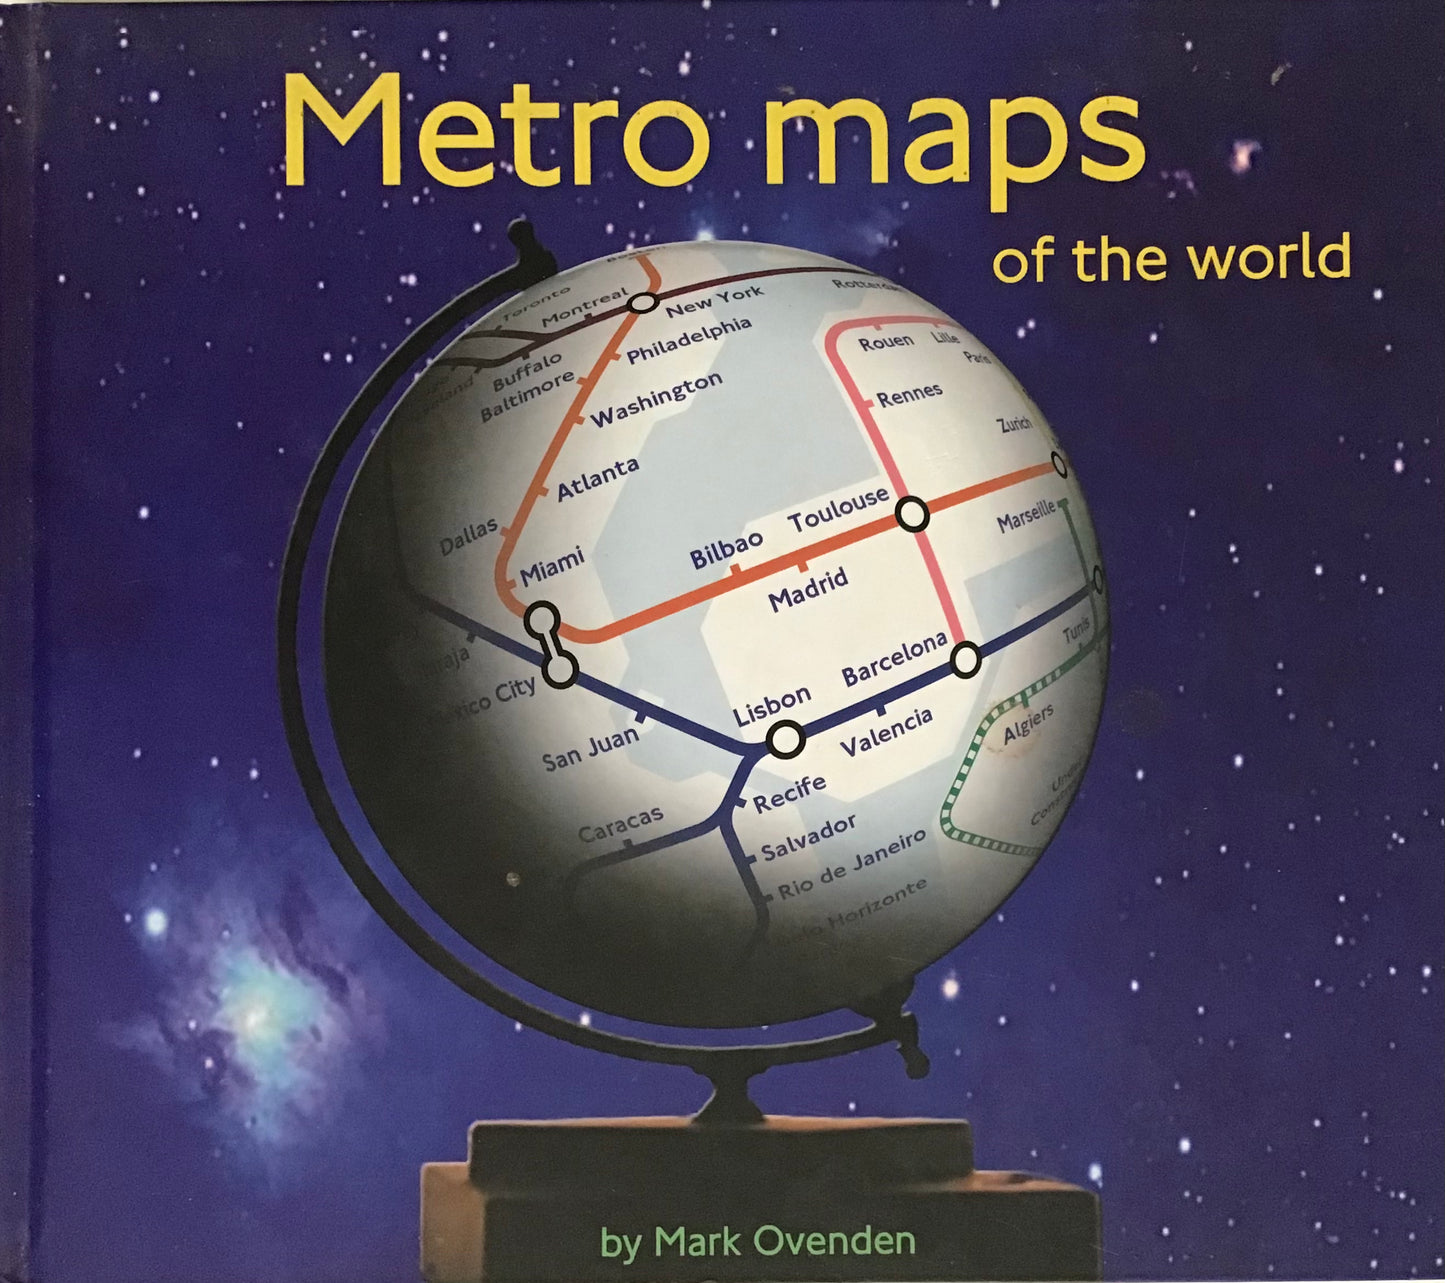 Metro maps of the World - Mark Ovenden - Chester Model Centre